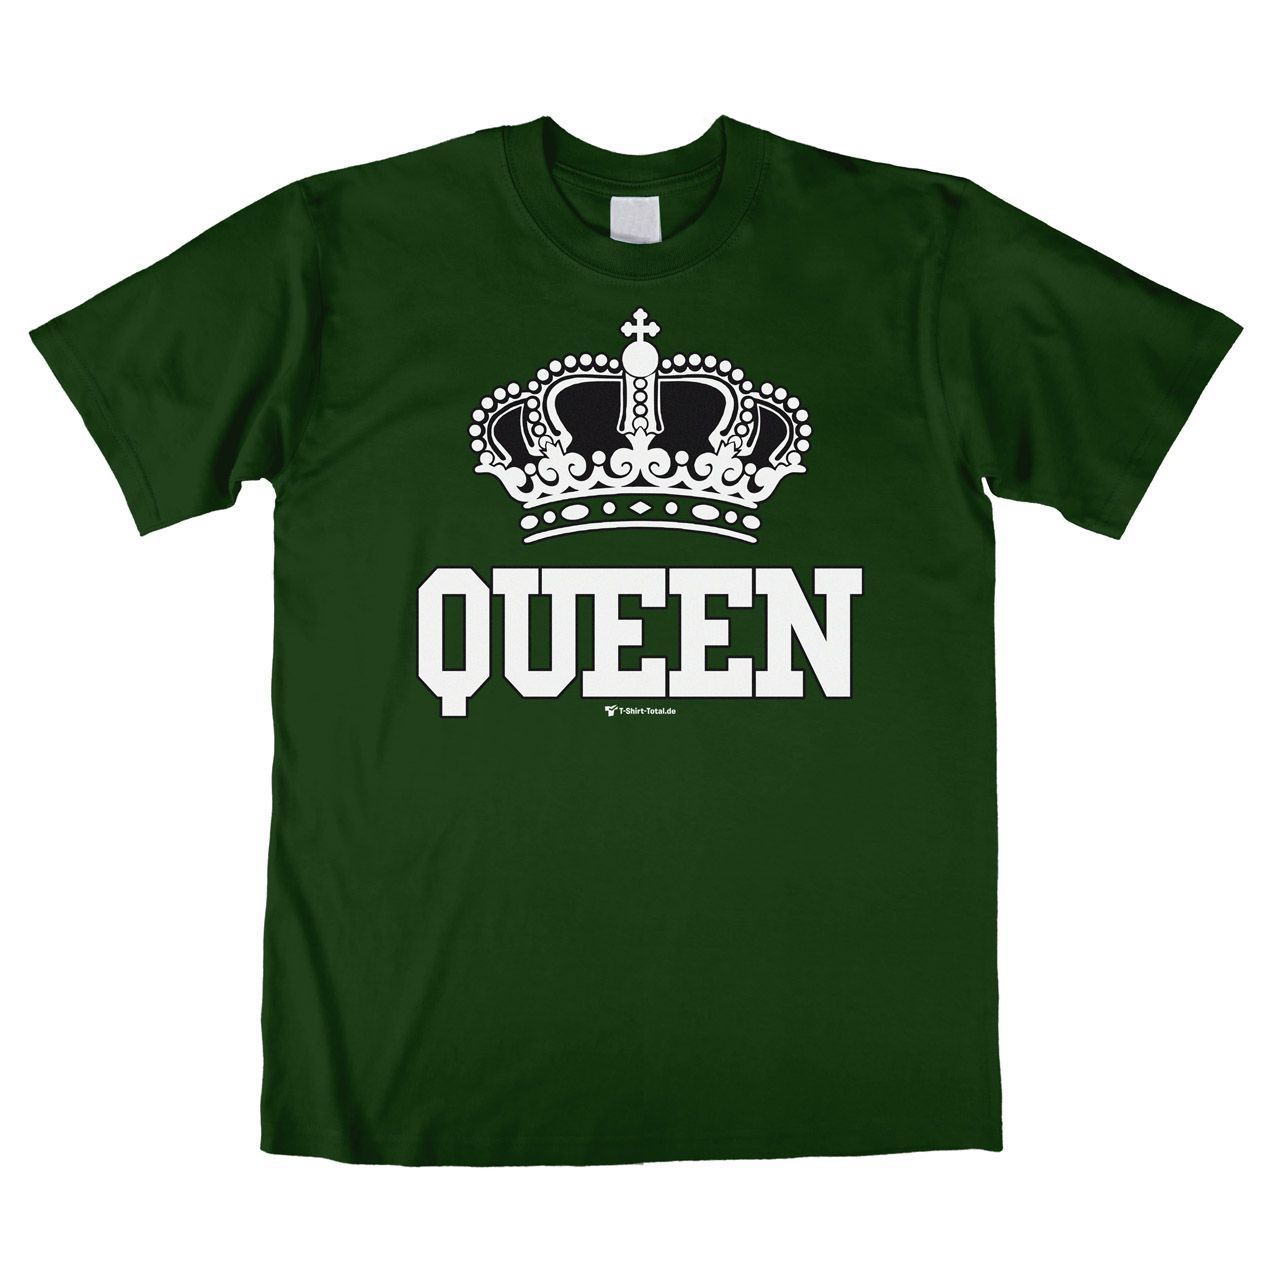 Queen Unisex T-Shirt dunkelgrün Medium